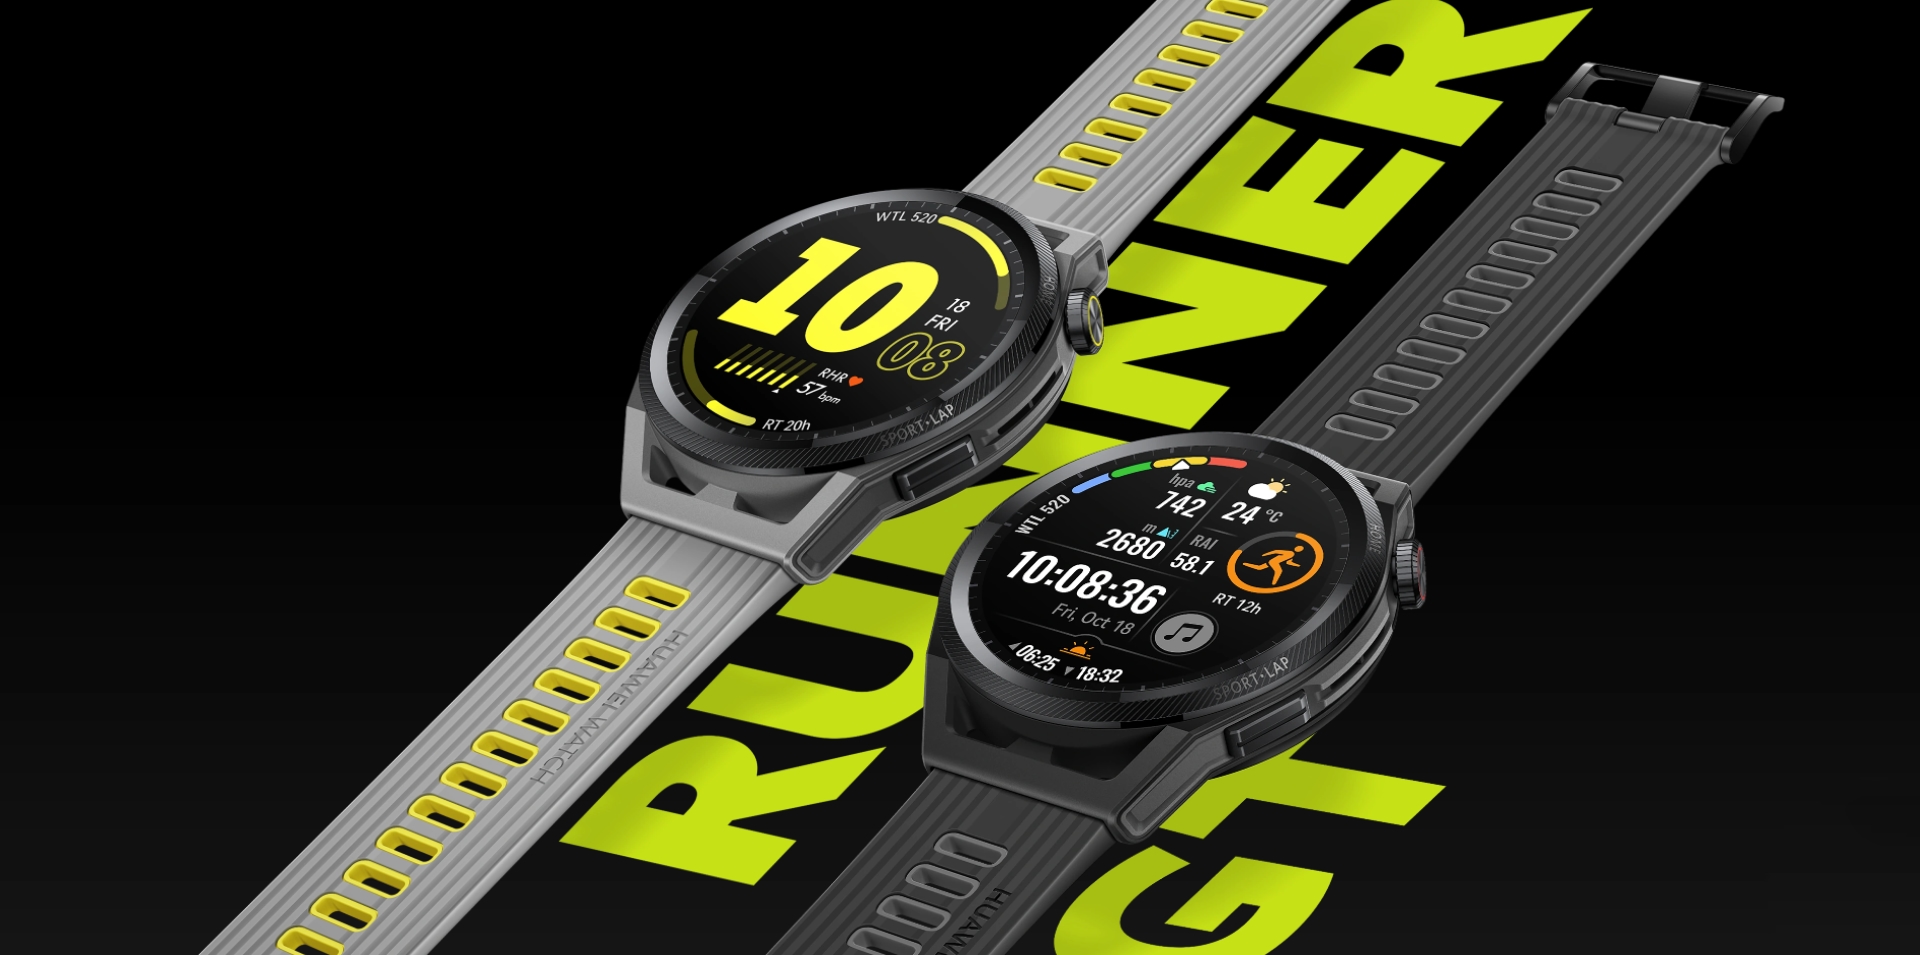 Huawei Watch GT Runner debütierte auf dem internationalen Markt: eine Smartwatch für Läufer für 299 Euro, ebenfalls mit netten Bonussen